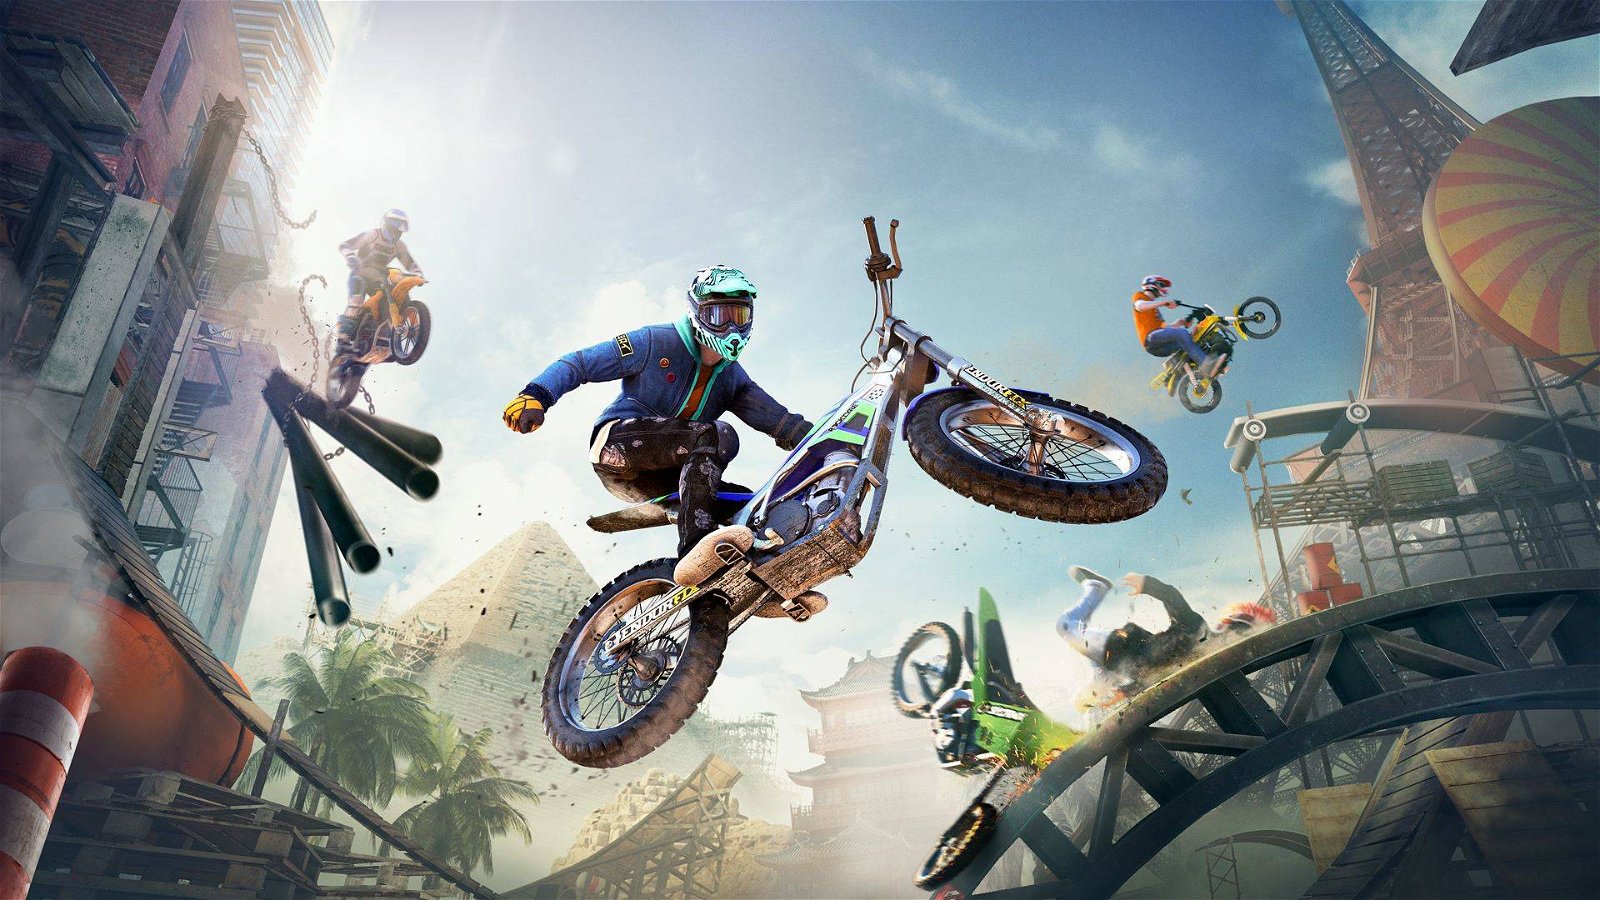 Immagine di Trials Rising, acrobazie e adrenalina nella nostra anteprima del nuovo gioco Ubisoft